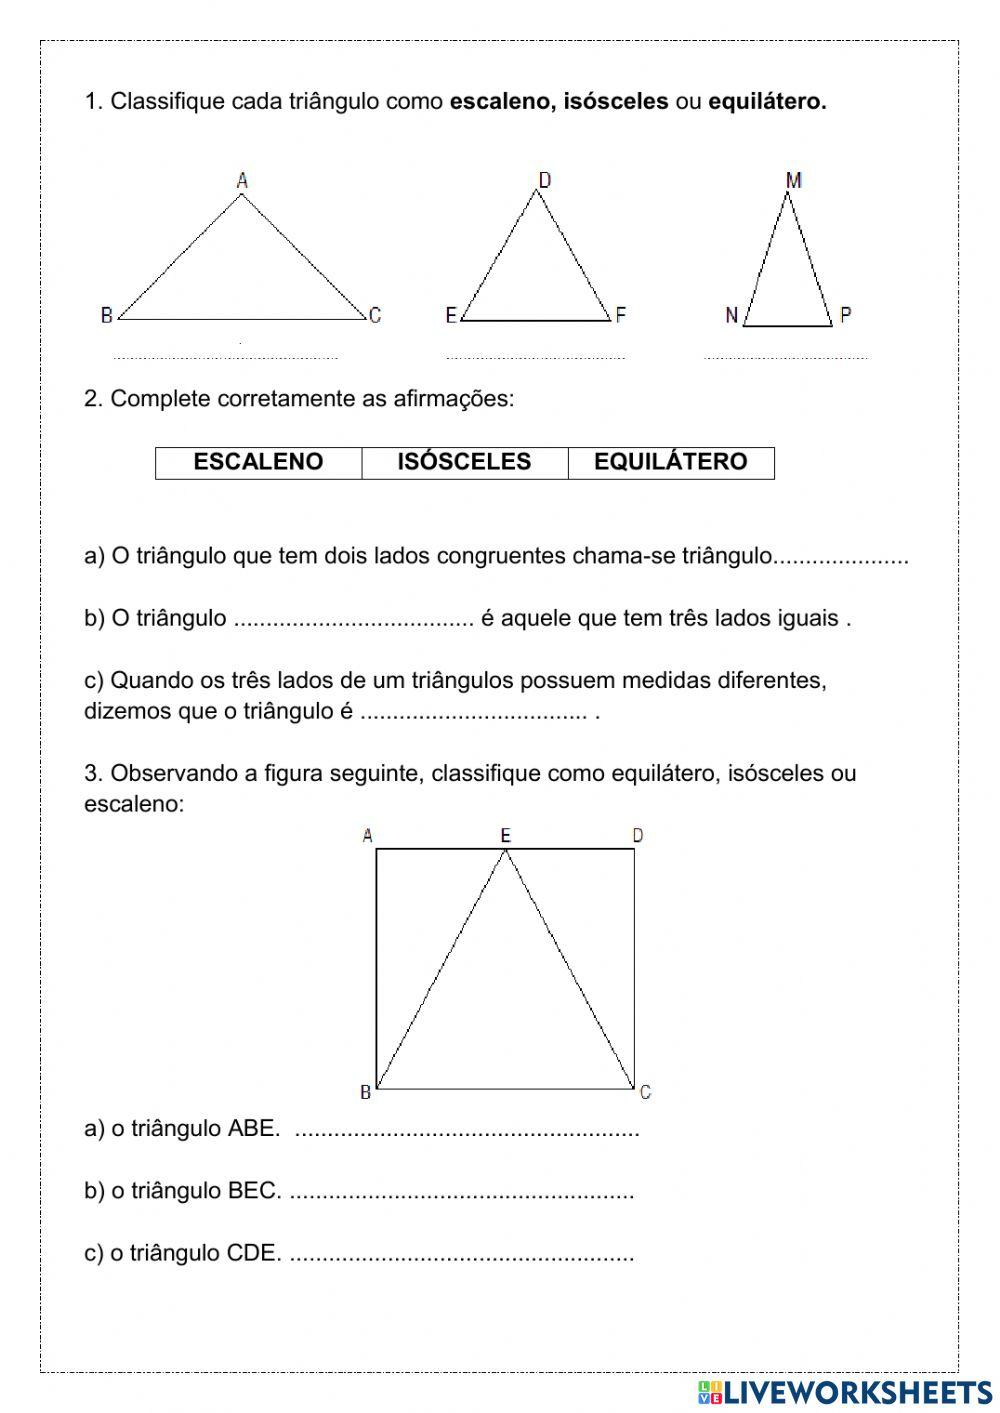 Classificação triangulo